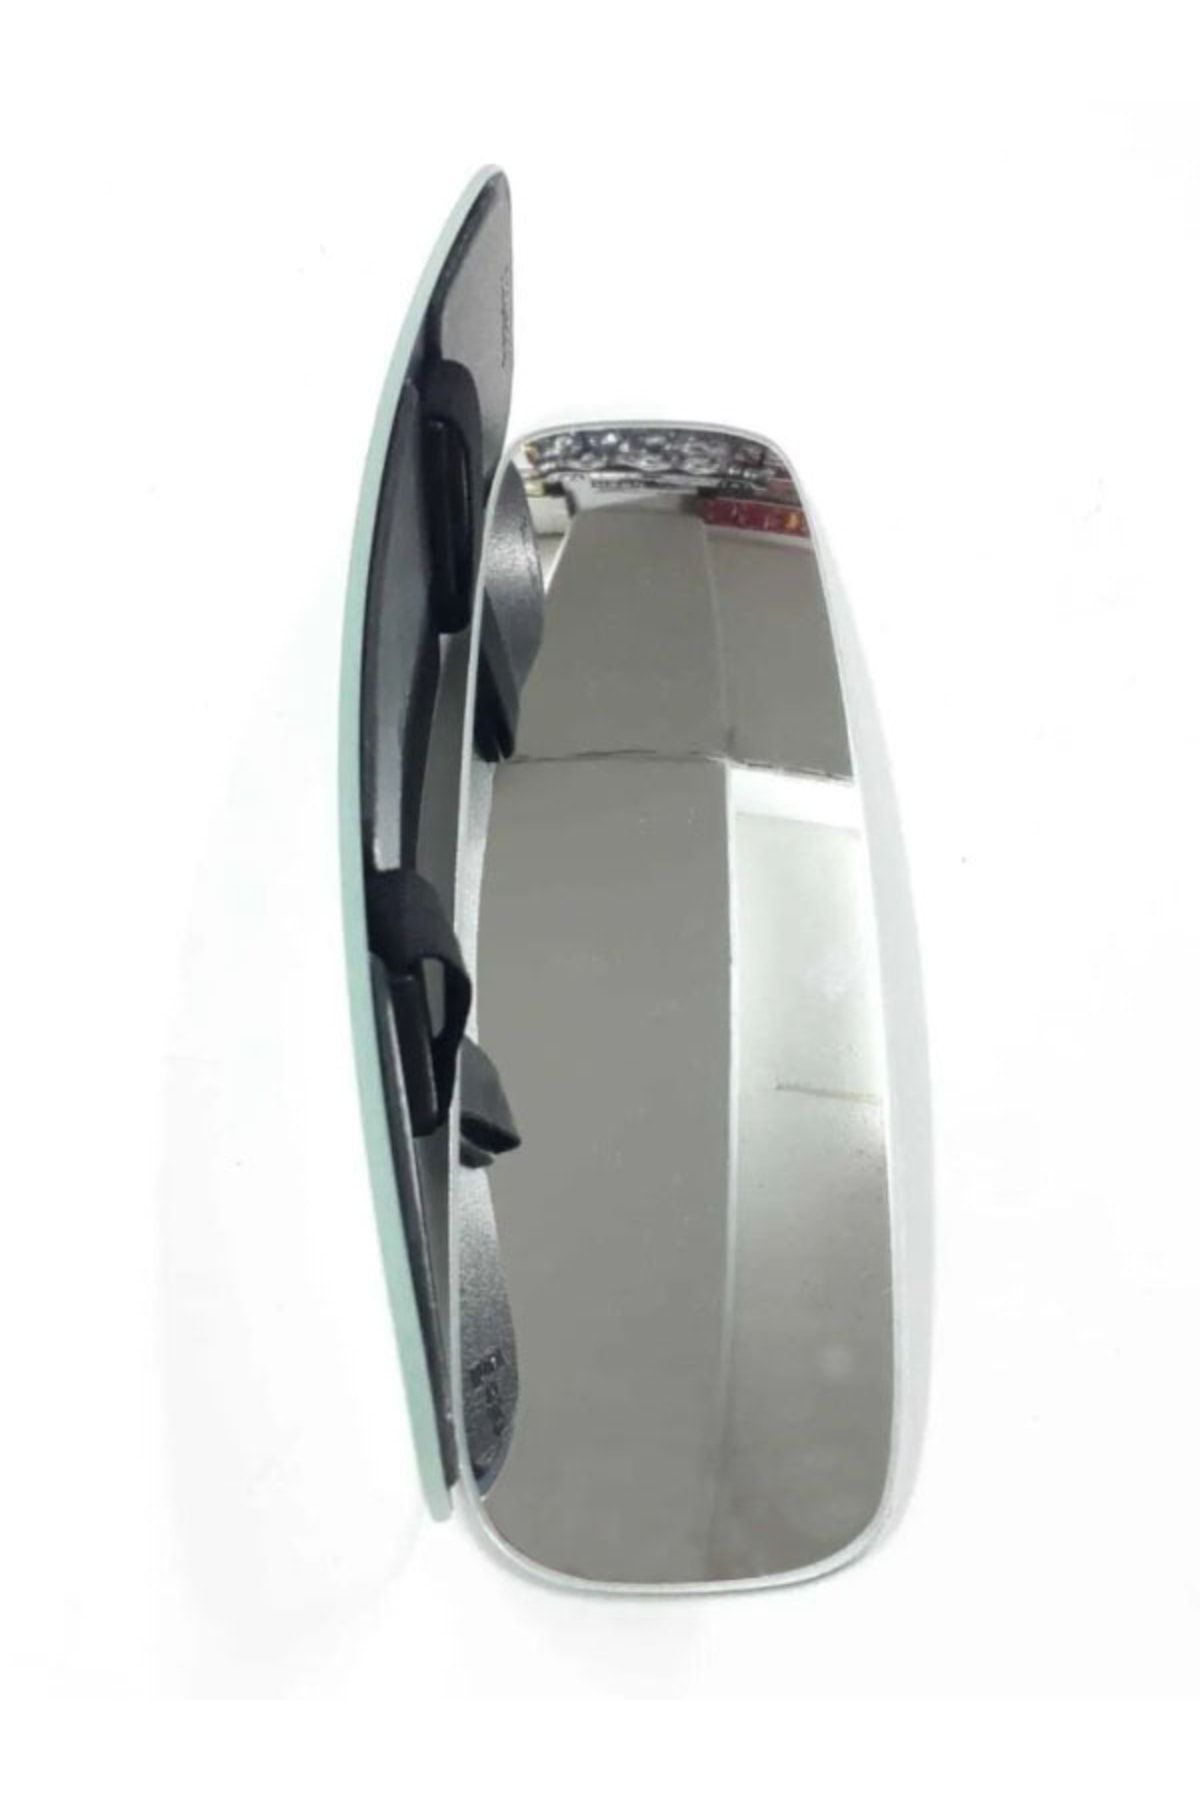 TuningPort Tp Iç Dikiz Aynası Geçme Bombeli Geniş Açılı Kırılmaz Ayna